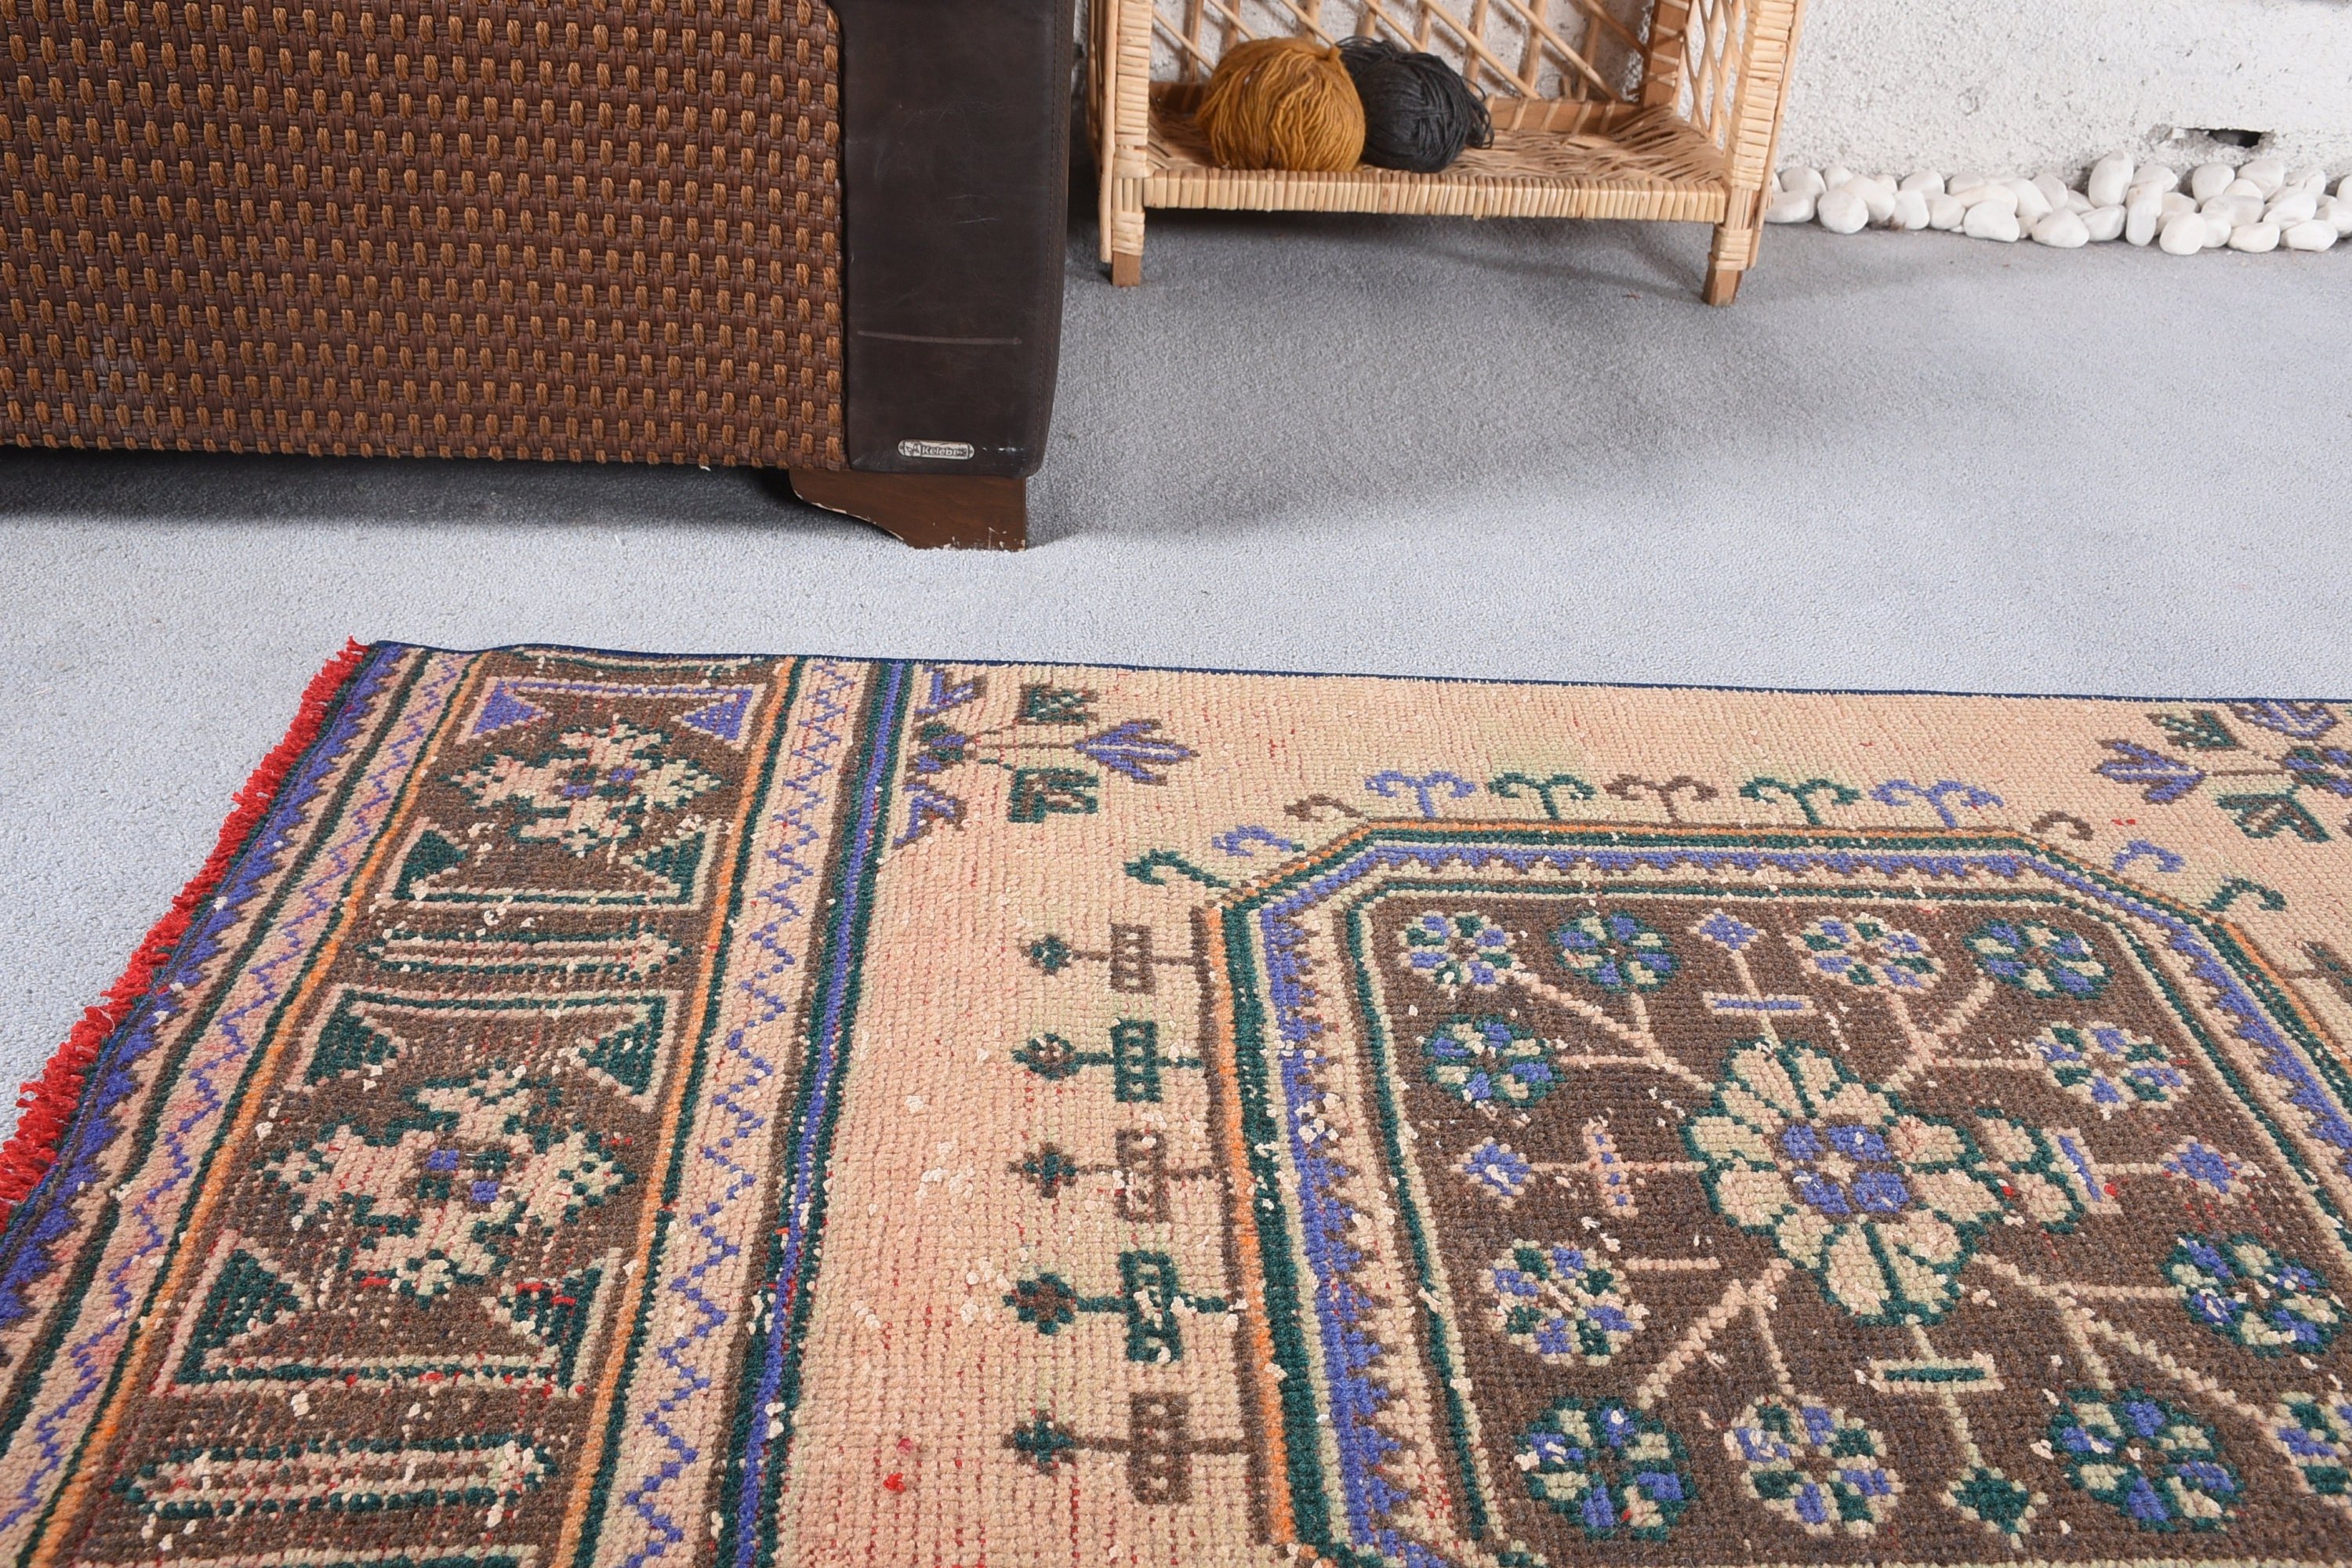 Vintage Rugs, Turkish Rug, Brown  2.6x12.2 ft Runner Rug, Home Decor Rugs, Floor Rugs, Moroccan Rug, Corridor Rug, Hallway Rug